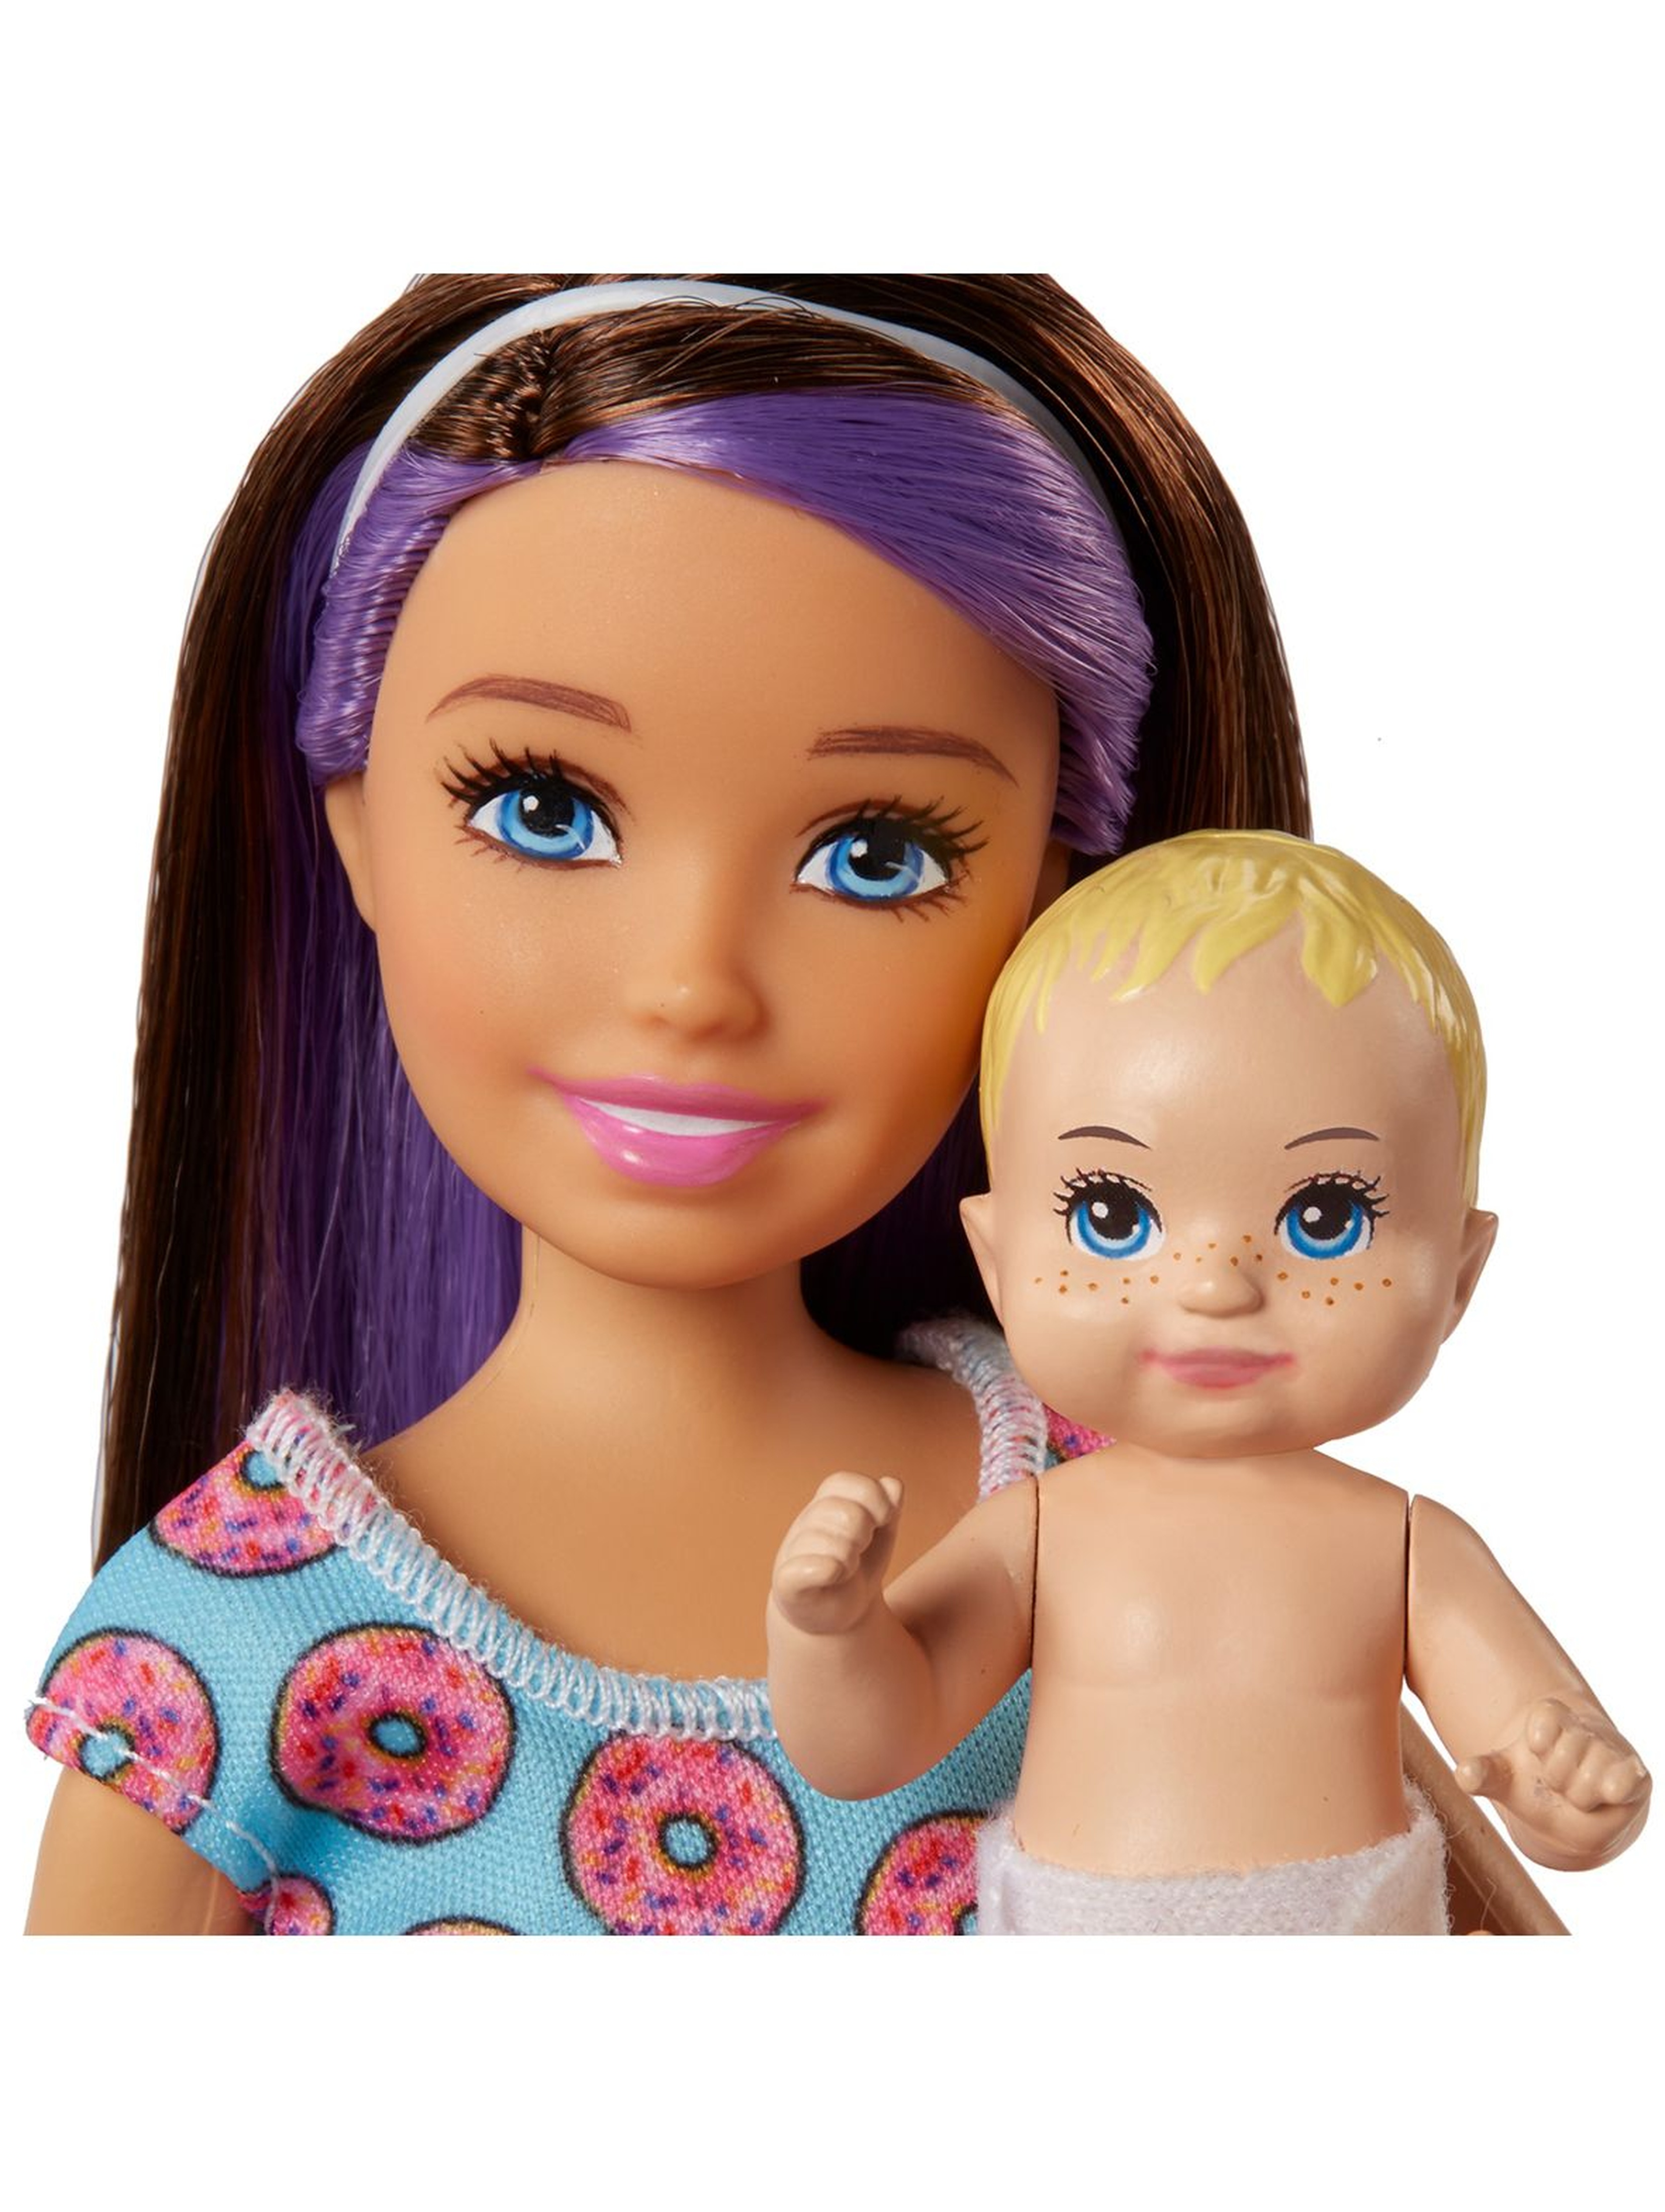 Barbie Opiekunka Zestaw Karmienie + usypianie wiek 3+